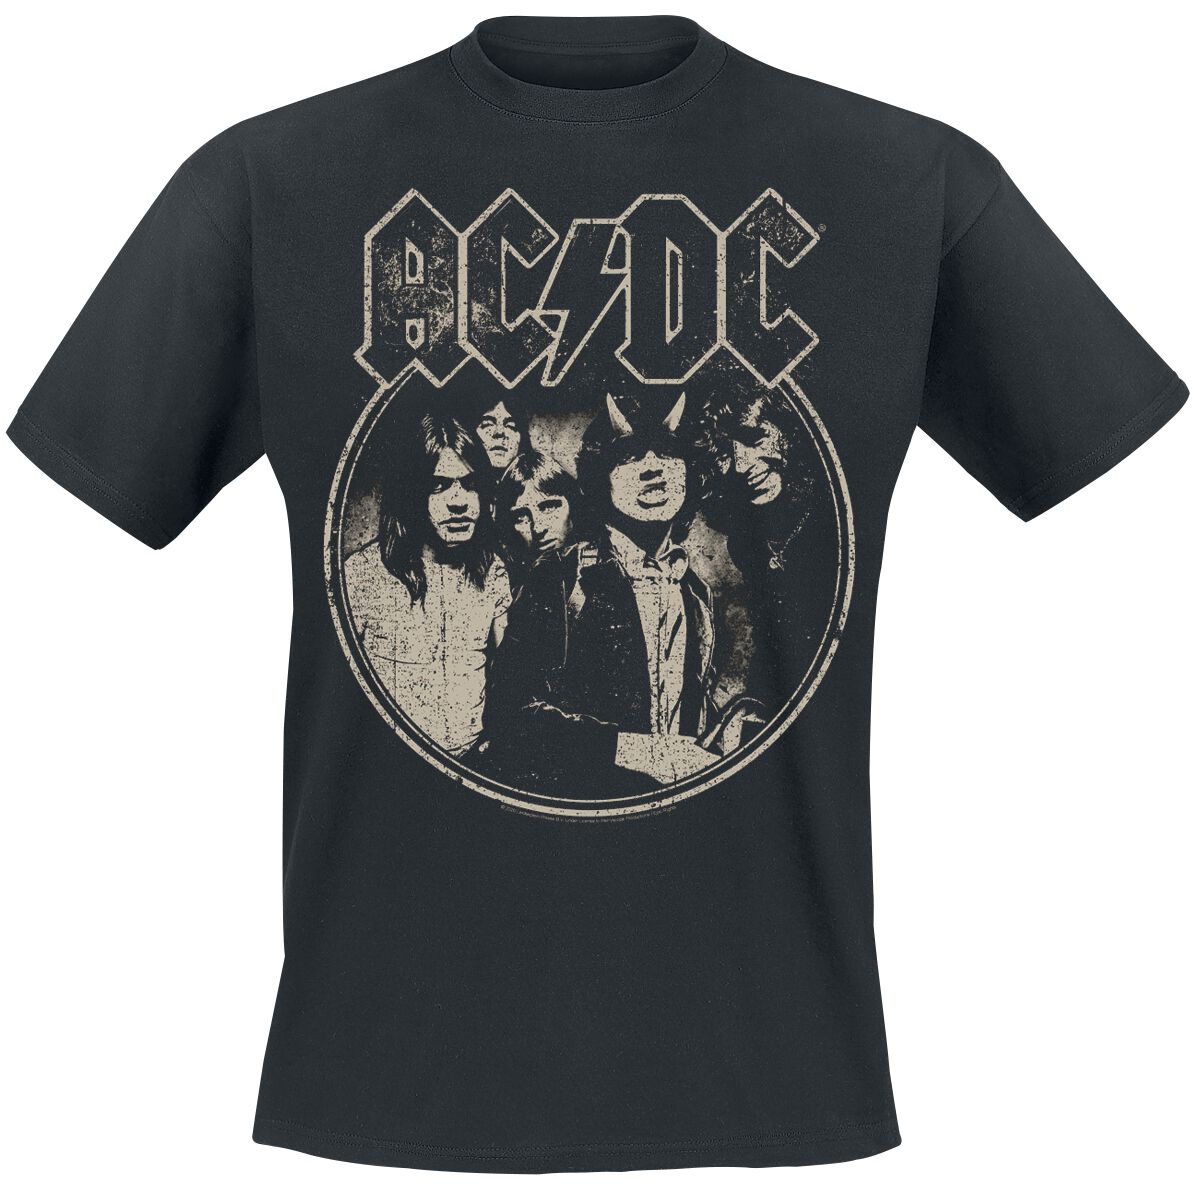 AC/DC T-Shirt - North American Tour 1979 - S bis 5XL - für Männer - Größe M - schwarz  - Lizenziertes Merchandise!